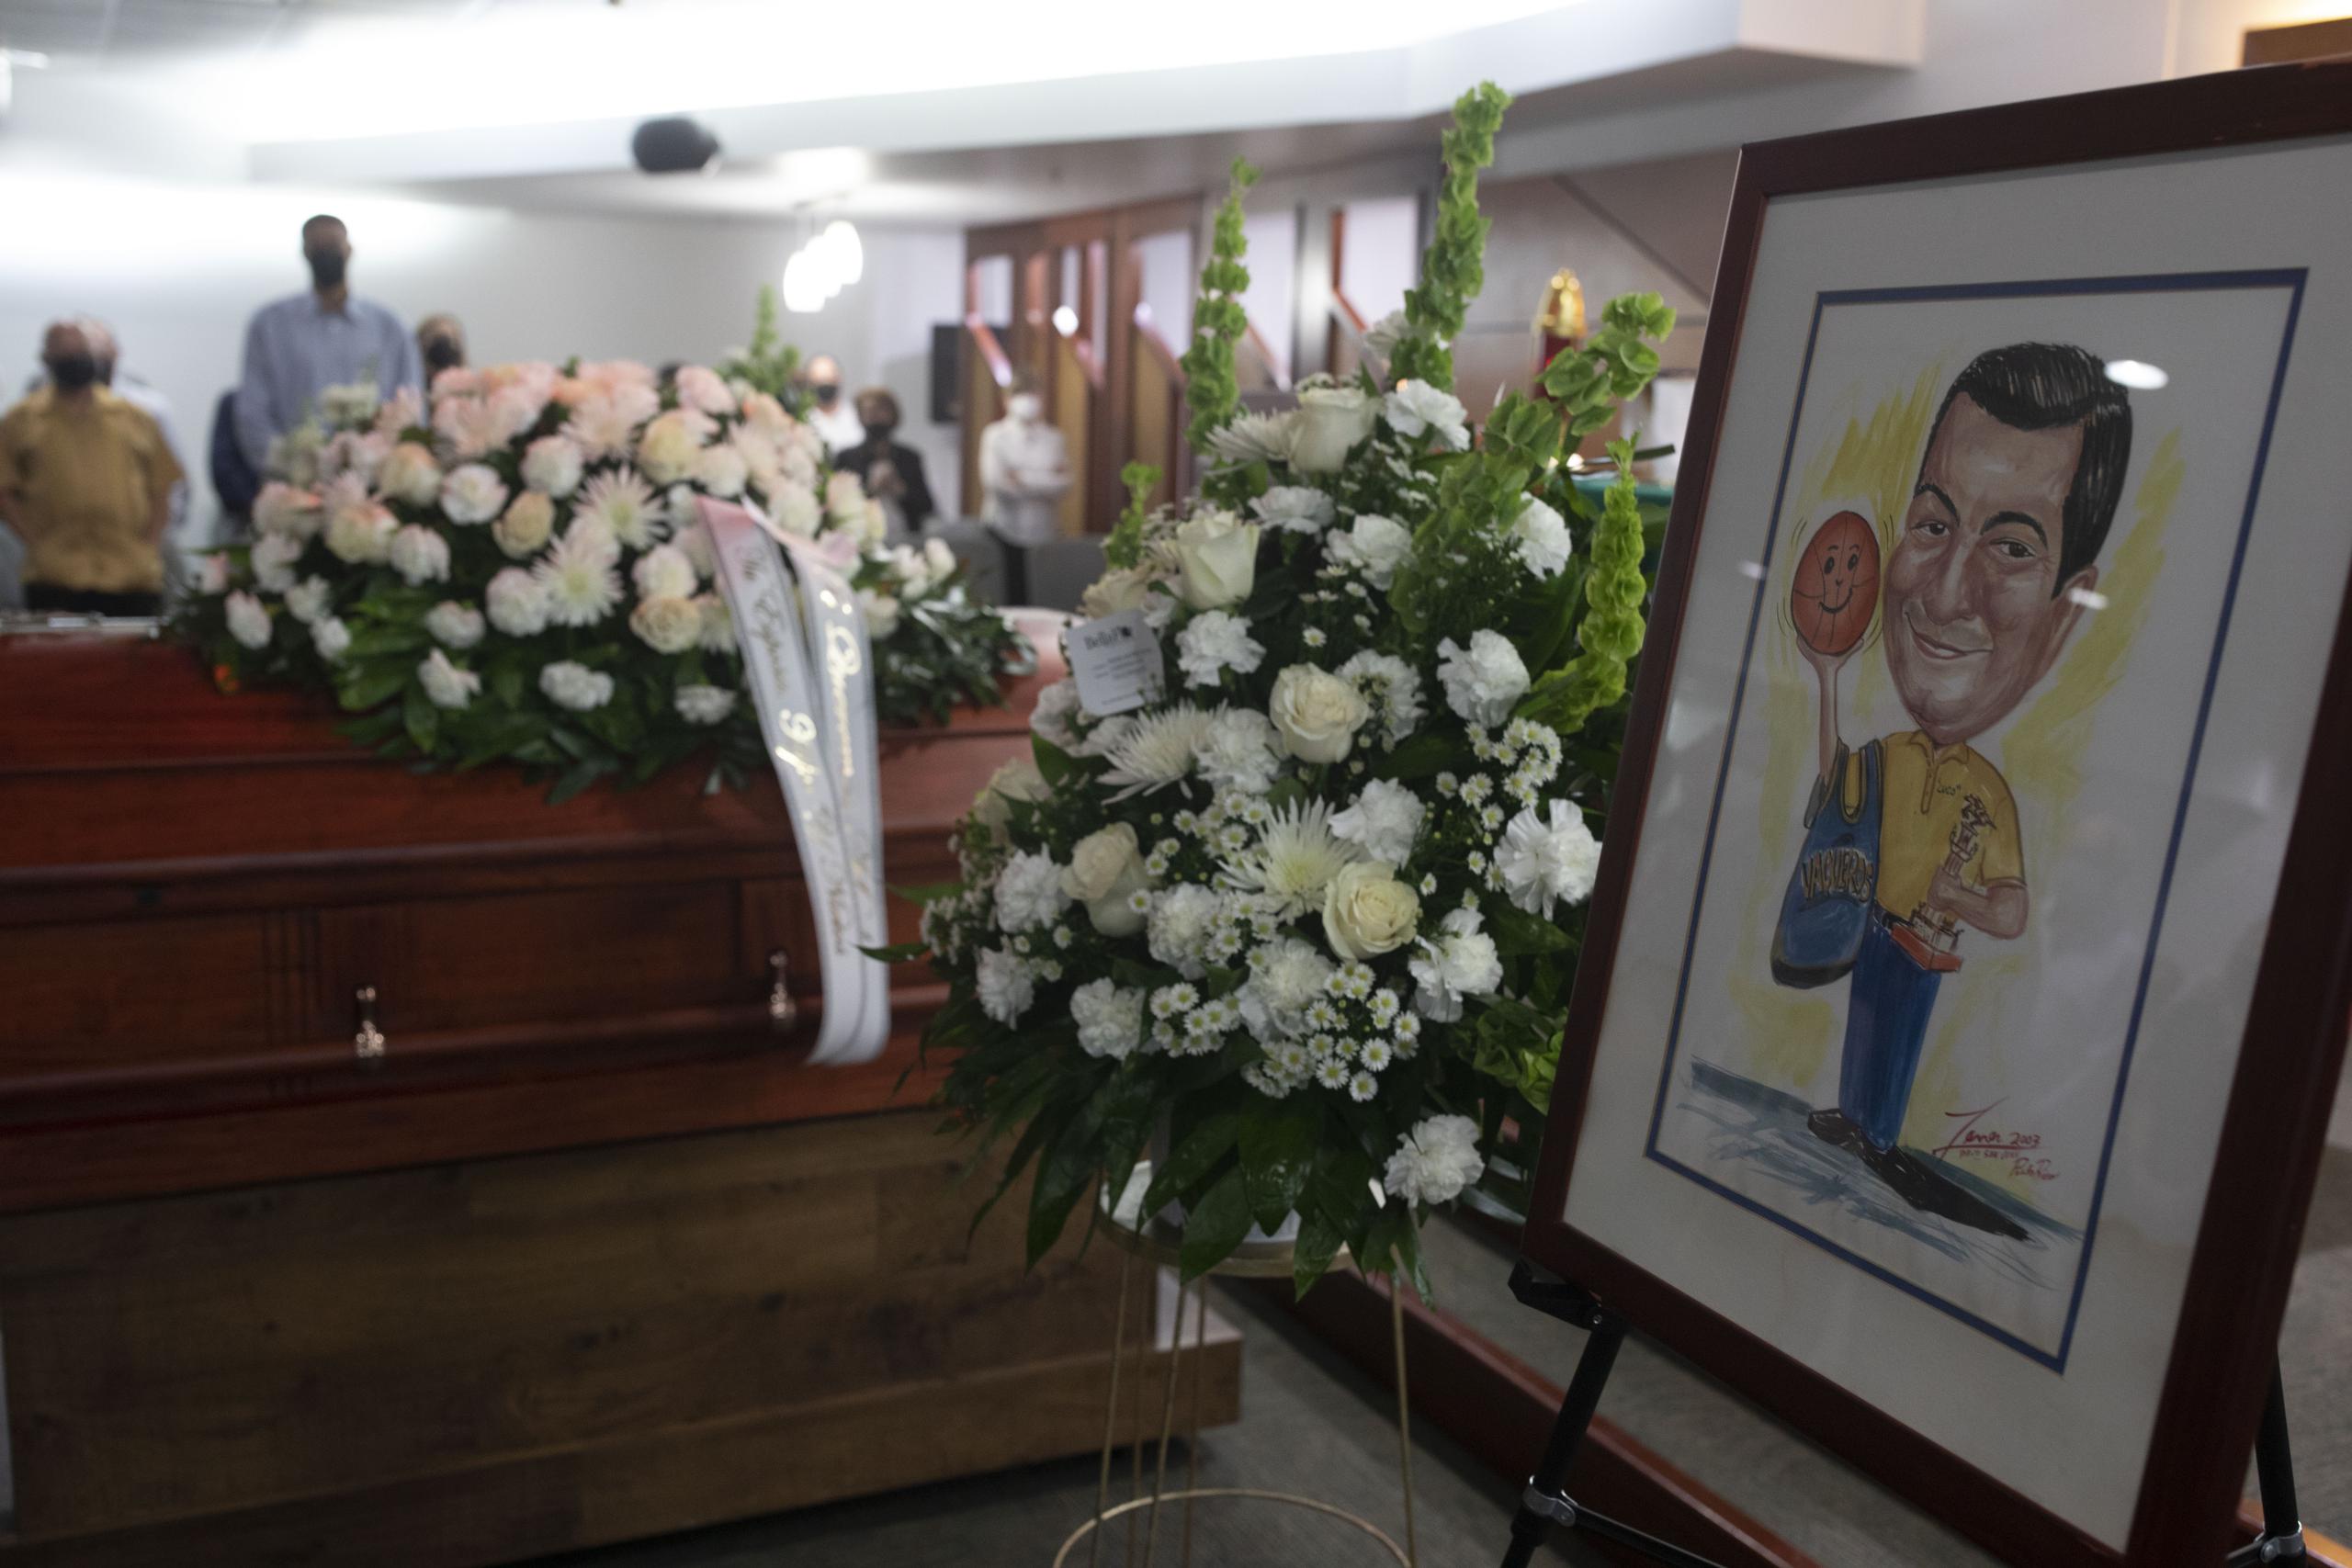 Los restos de Pedro “Cuco” Ortiz estuvieron en la Funeraria Ehret y luego pasará por el proceso de cremación. 

Foto Xavier Araujo | xavier.araujo@gfrmedia.com